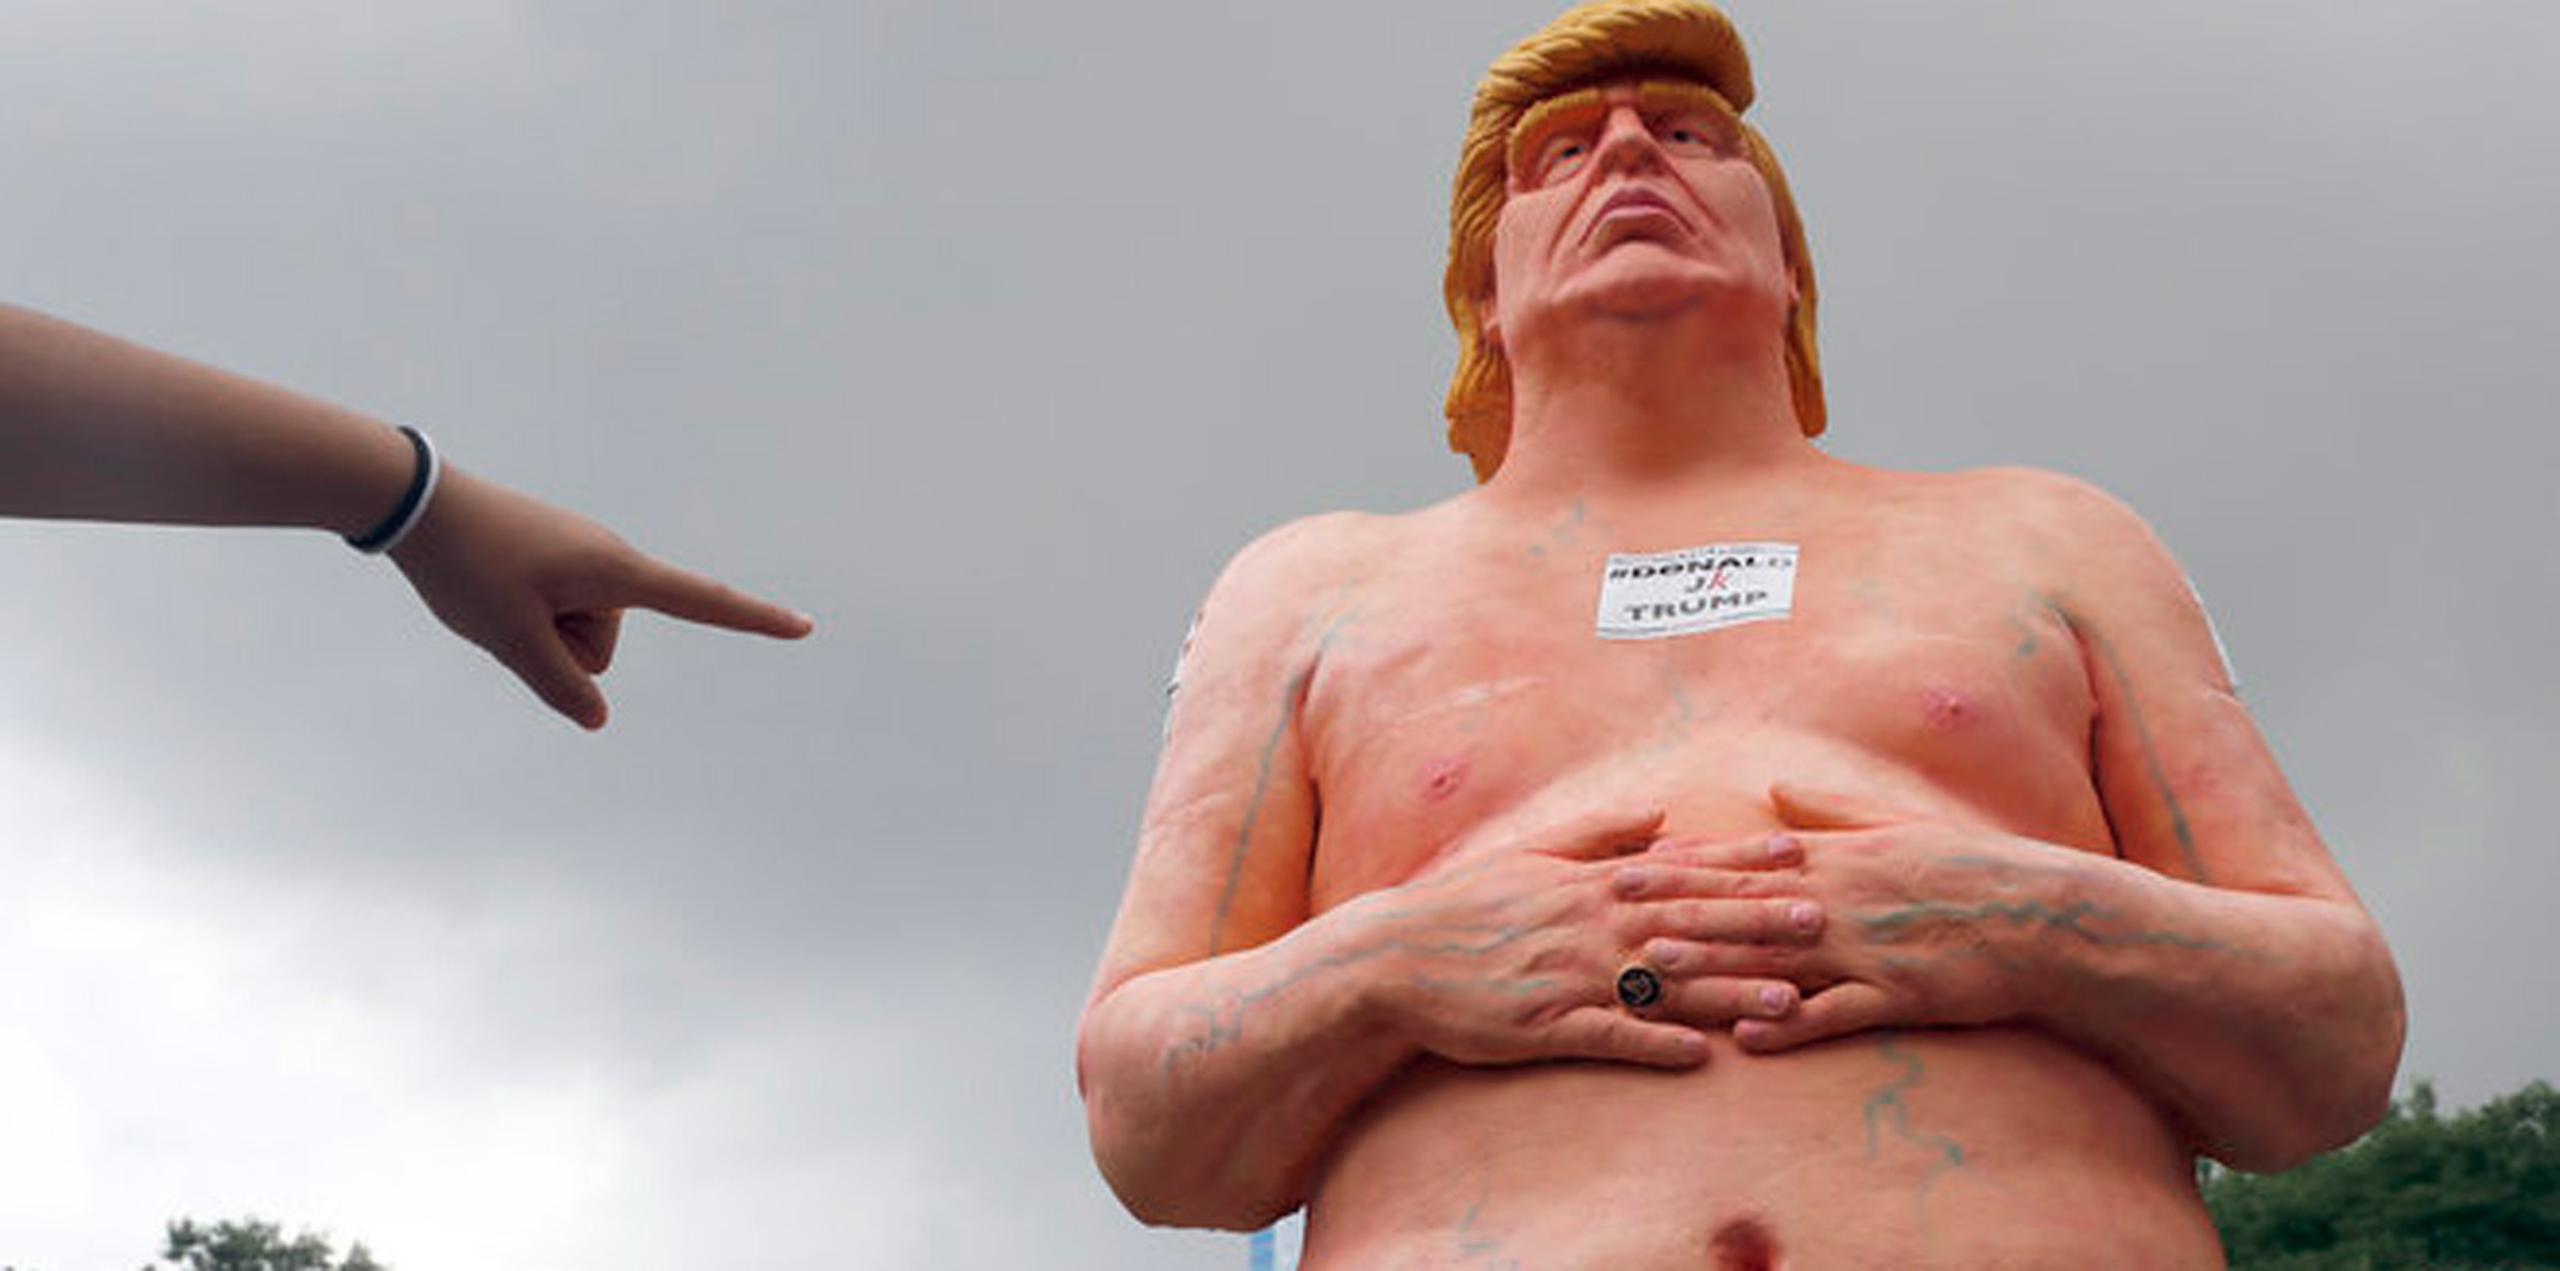 La polémica estatua de Trump desnudo había permanecido cerca de una semana en el tejado de un edificio en Wynwood, tras ser retirada de lo alto de una valla publicitaria en Miami por razones de seguridad. (AP)